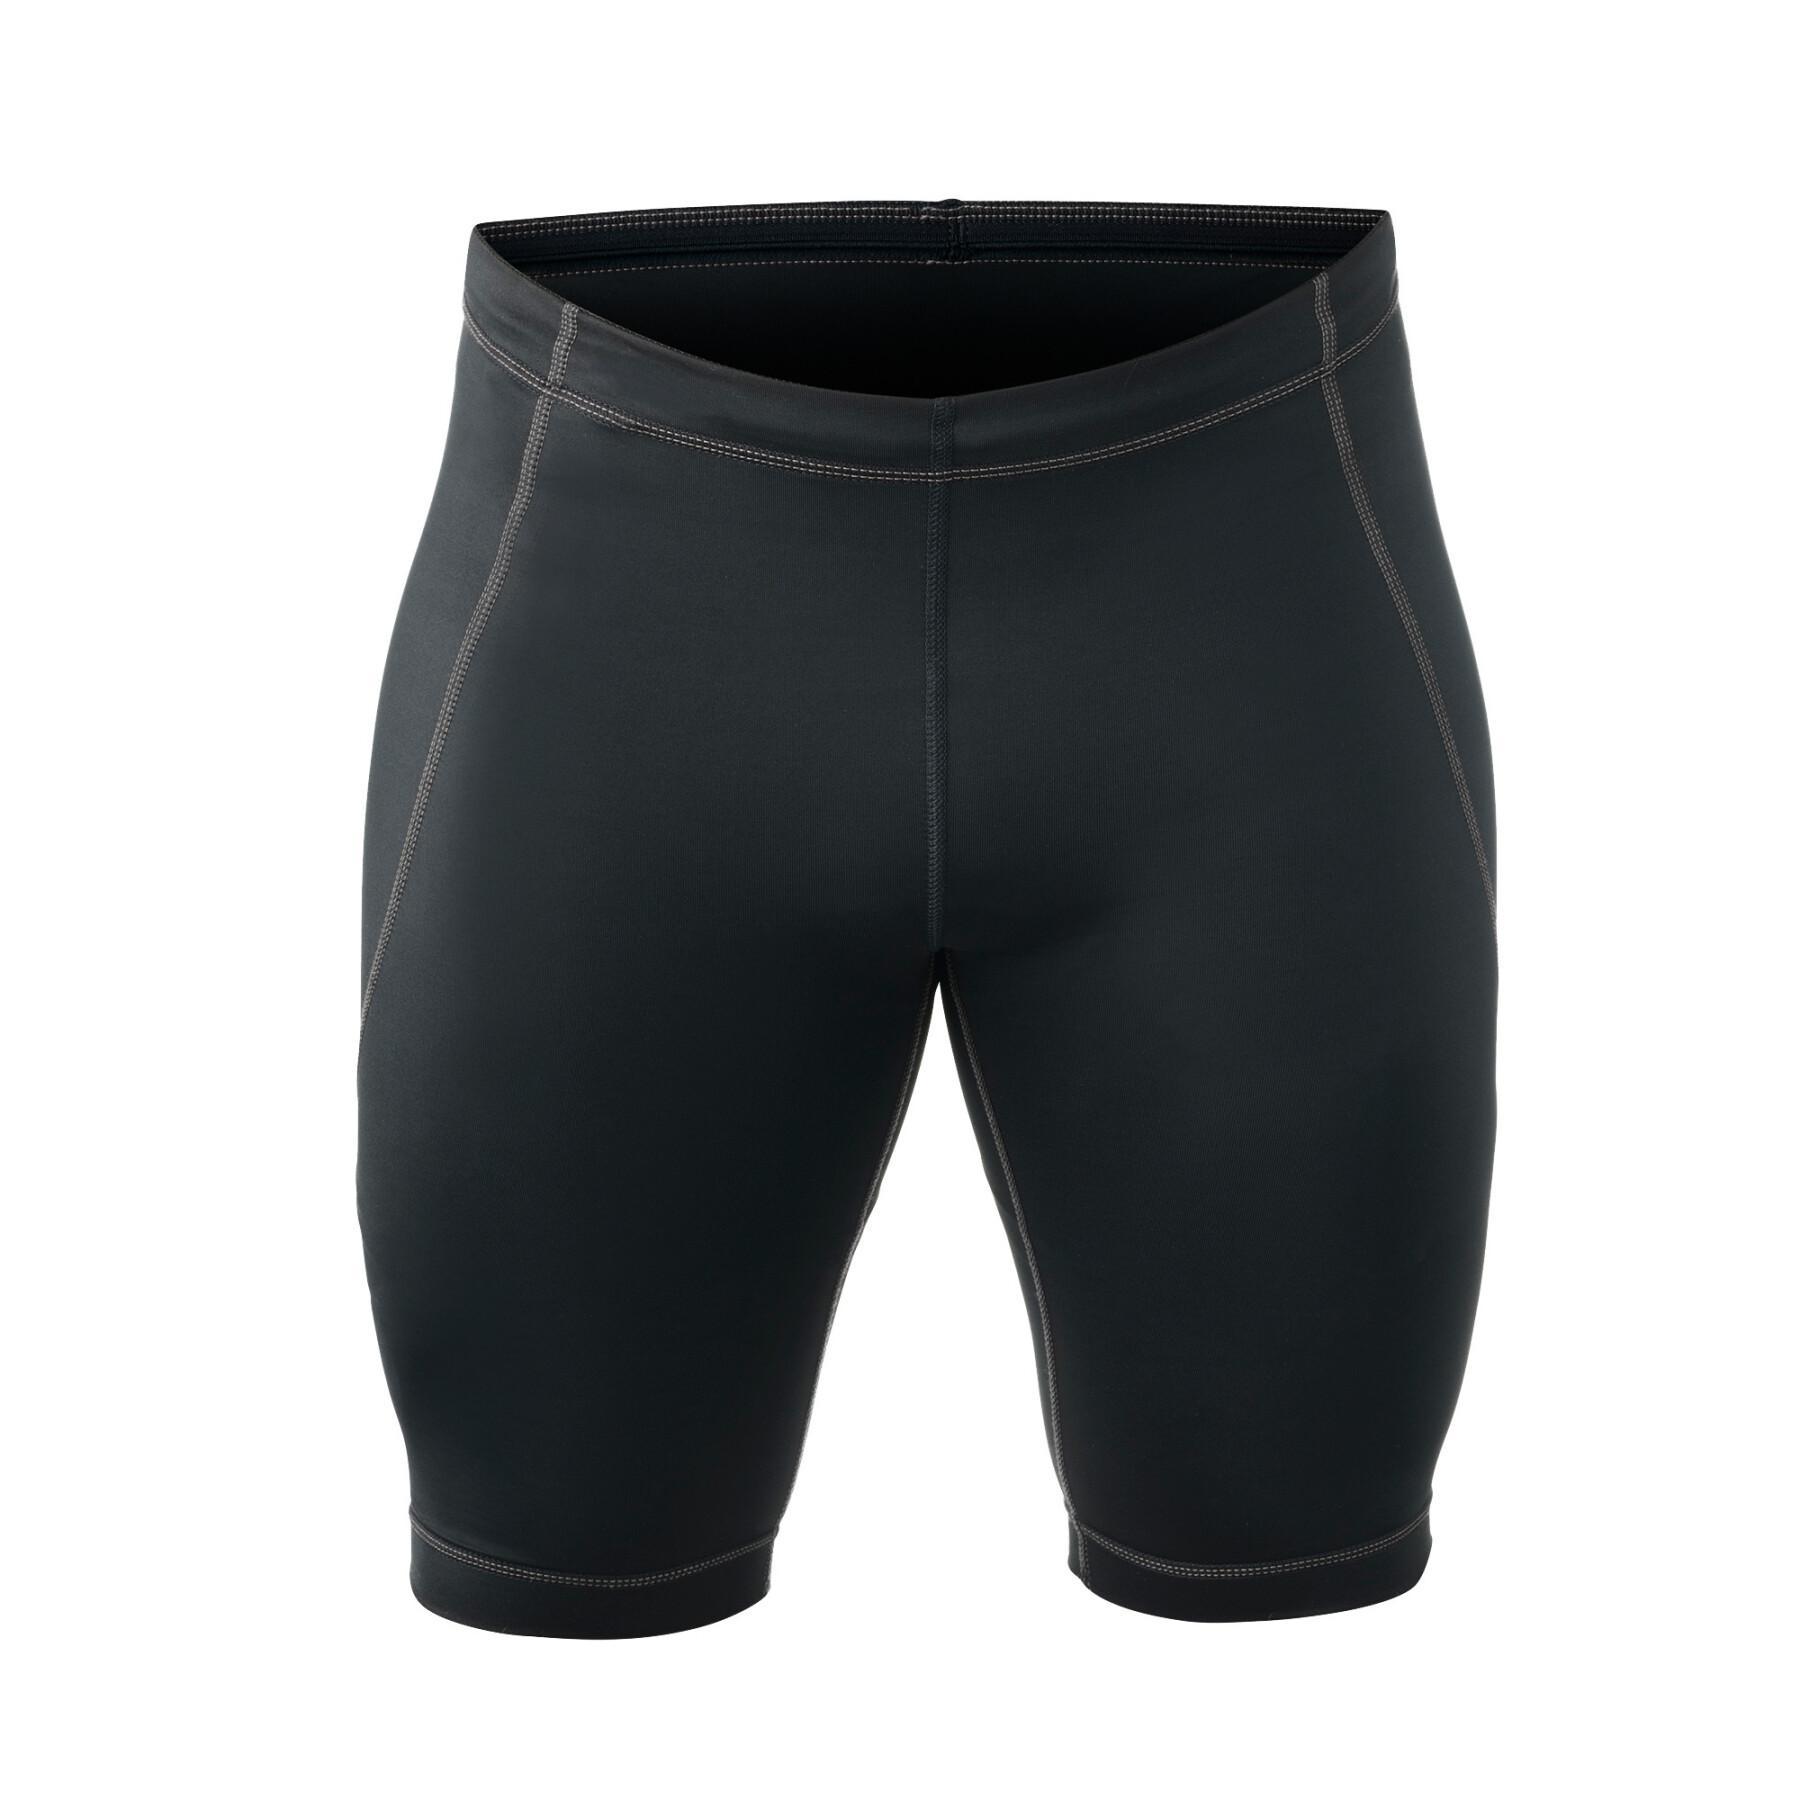 Pantalones cortos de compresión Rehband Qd line